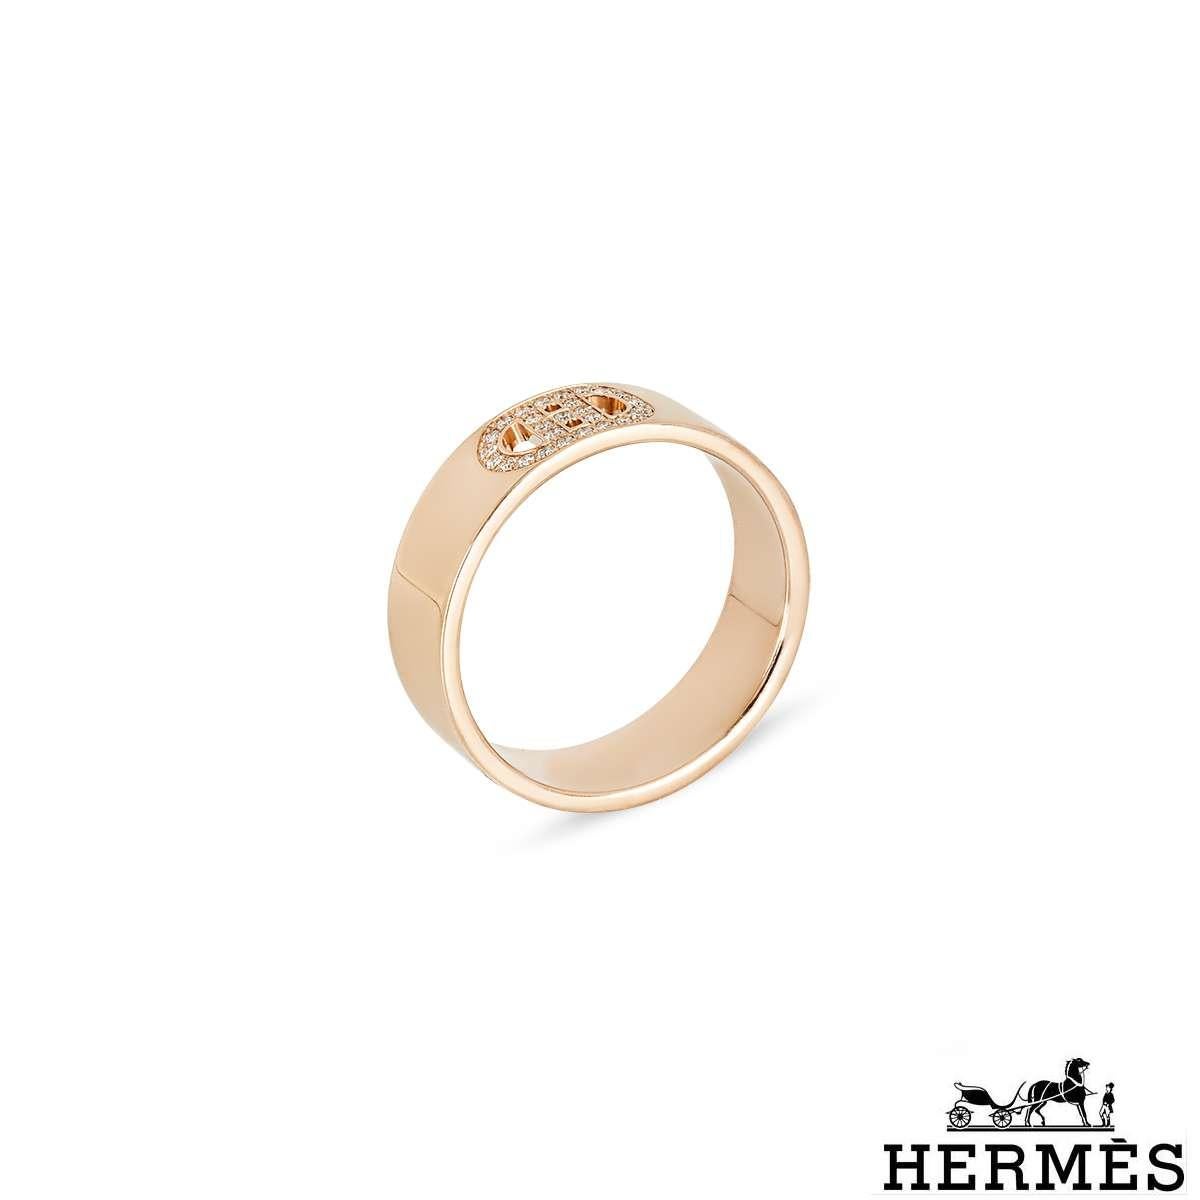 Bague en or rose 18 carats de la collection H d'Ancre de la maison Hermès, ornée de diamants. La bague est ornée du motif emblématique de la boucle en 